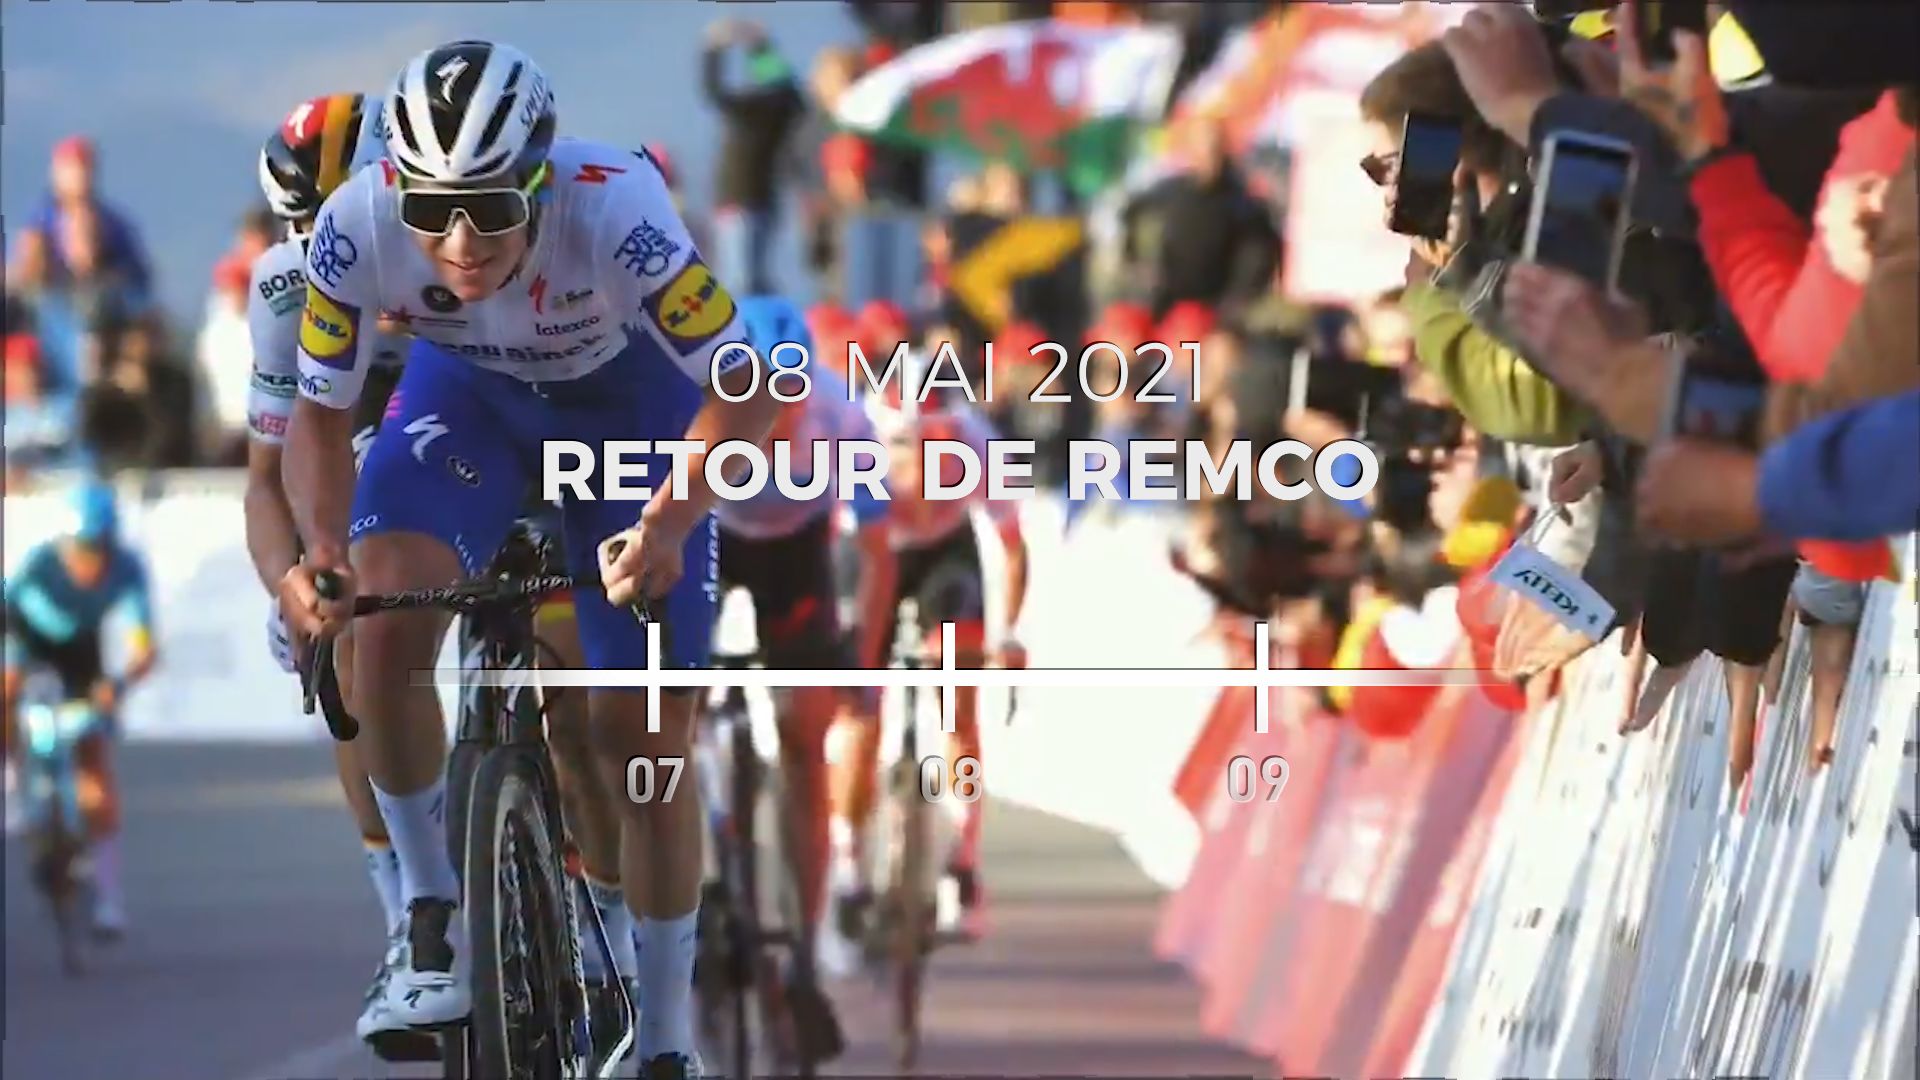 Quasiment neuf mois après sa terrible chute au Tour de Lombardie, Remco Evenepoel va reprendre le chemin de la compétition ce samedi, au départ du Tour d’Italie. Entre cette terrible bascule dans le ravin et la 1ère étape du Giro, retour en 9 dates clés s